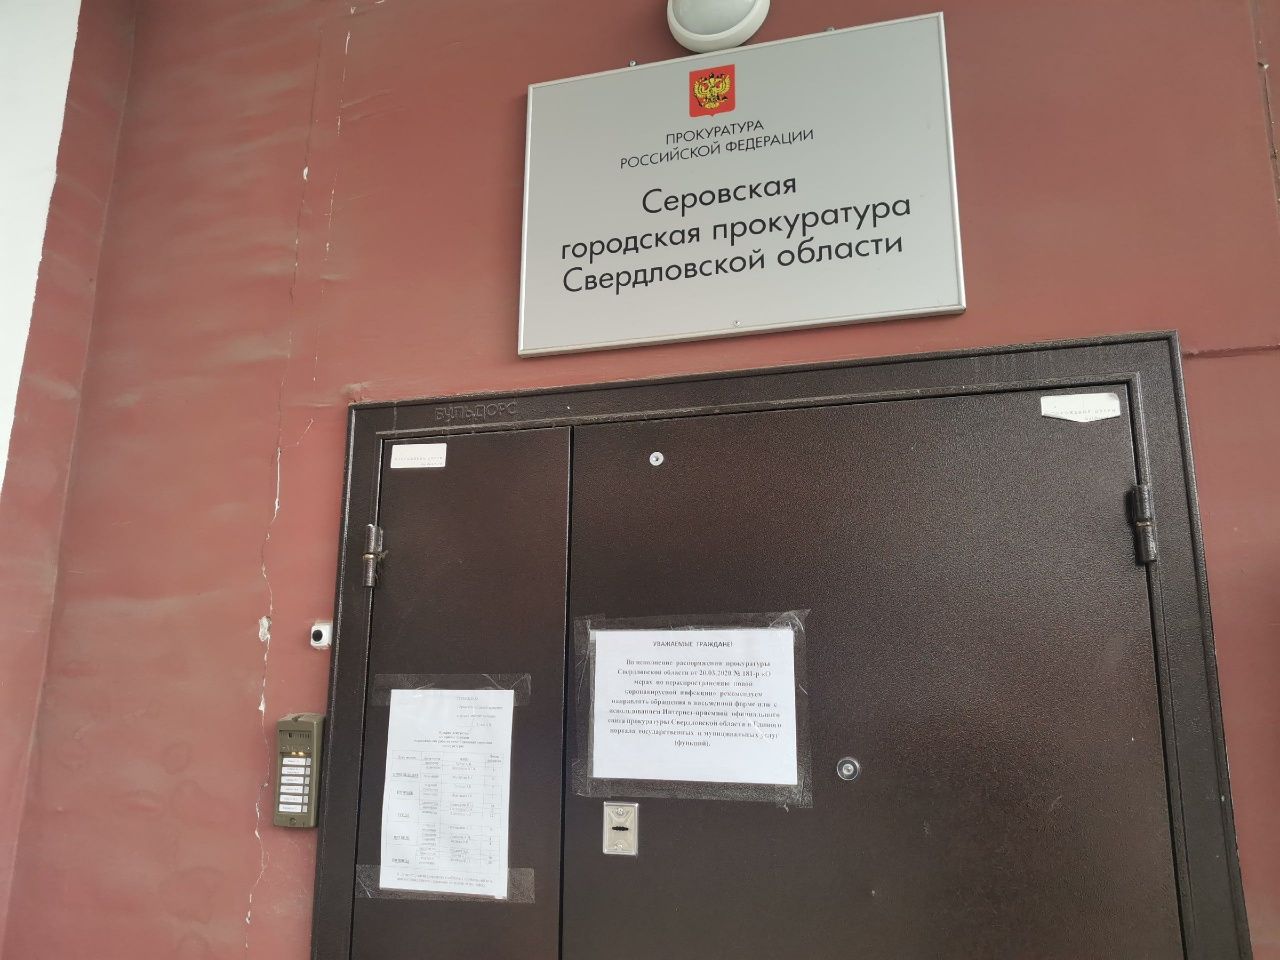 Сотрудников станции Скорой помощи пригласили в прокуратуру Серова